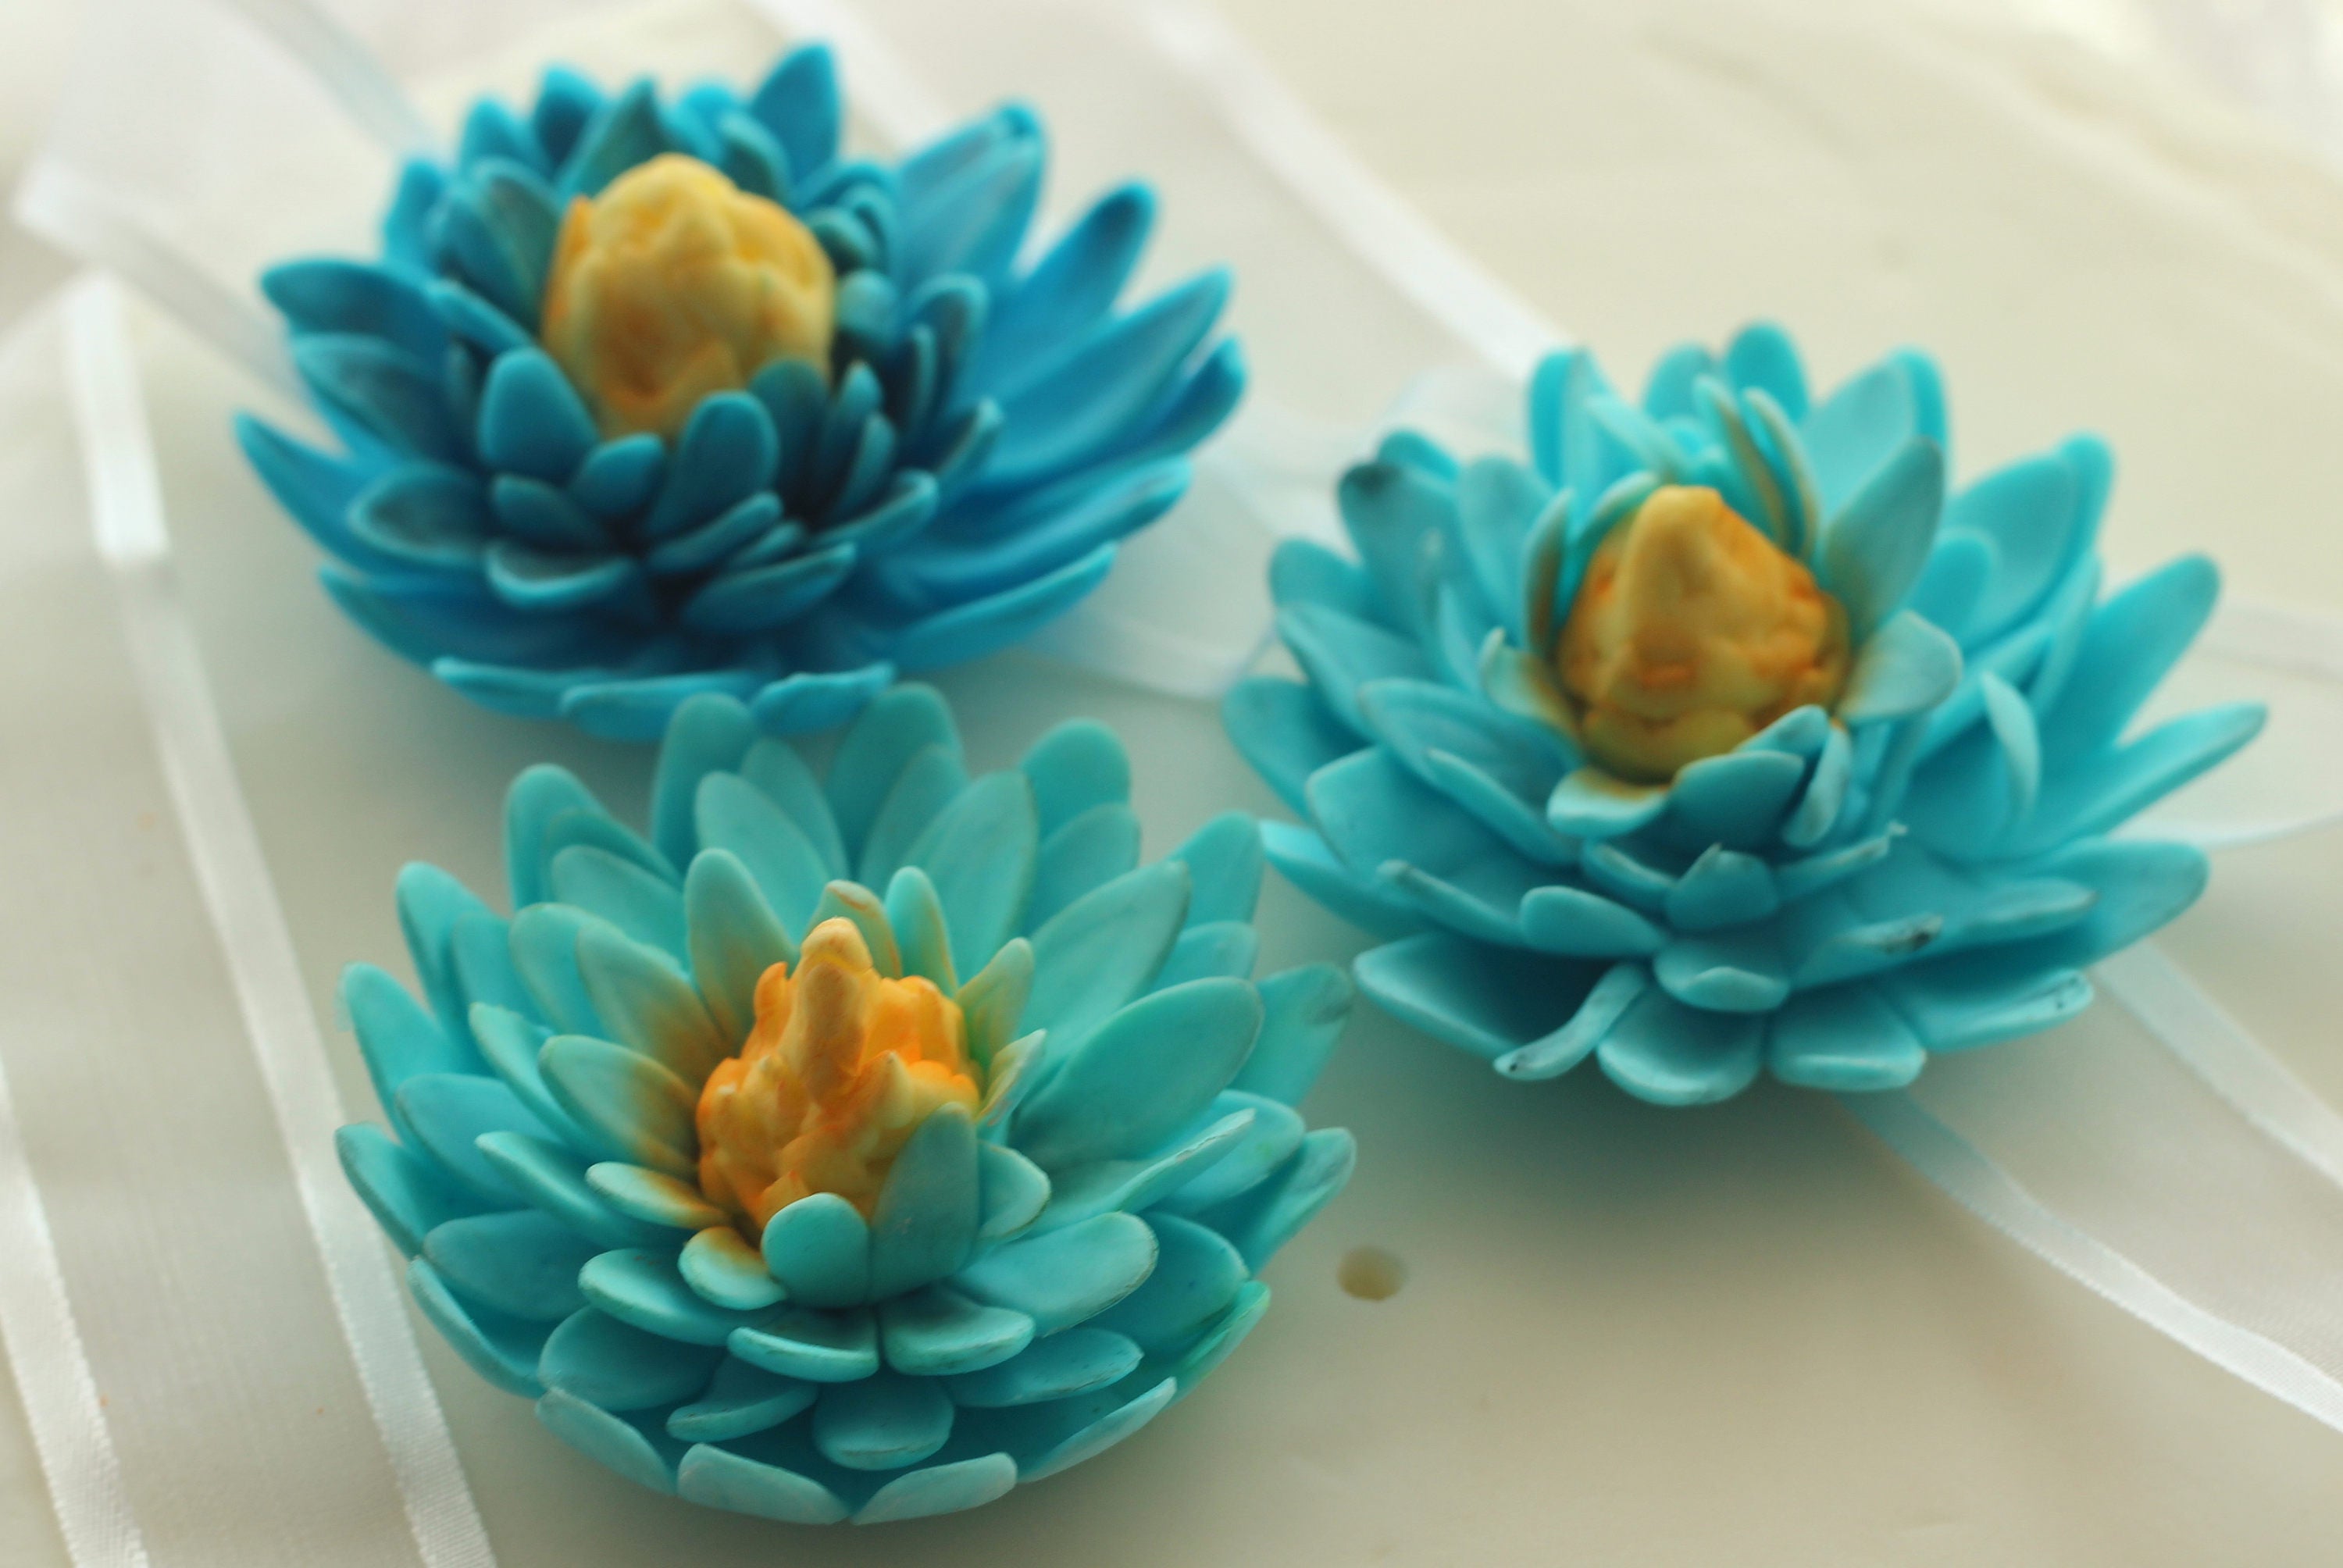 Lotus flowers edible custom made. gumpaste flowers. wedding